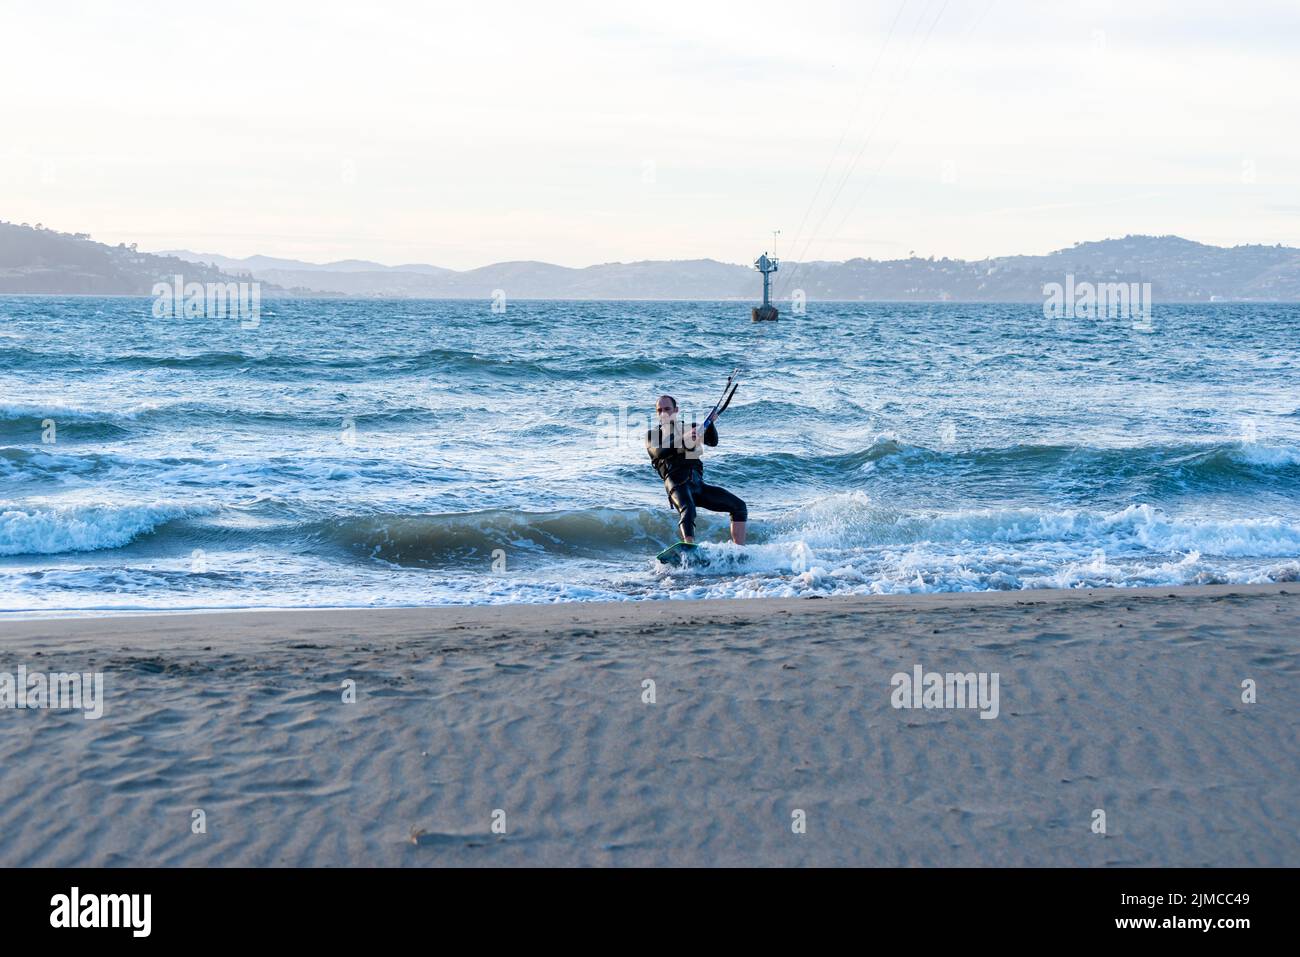 Kitesurfer maschio vicino al bordo di un corpo d'acqua con acqua blu e colline in lontananza Foto Stock